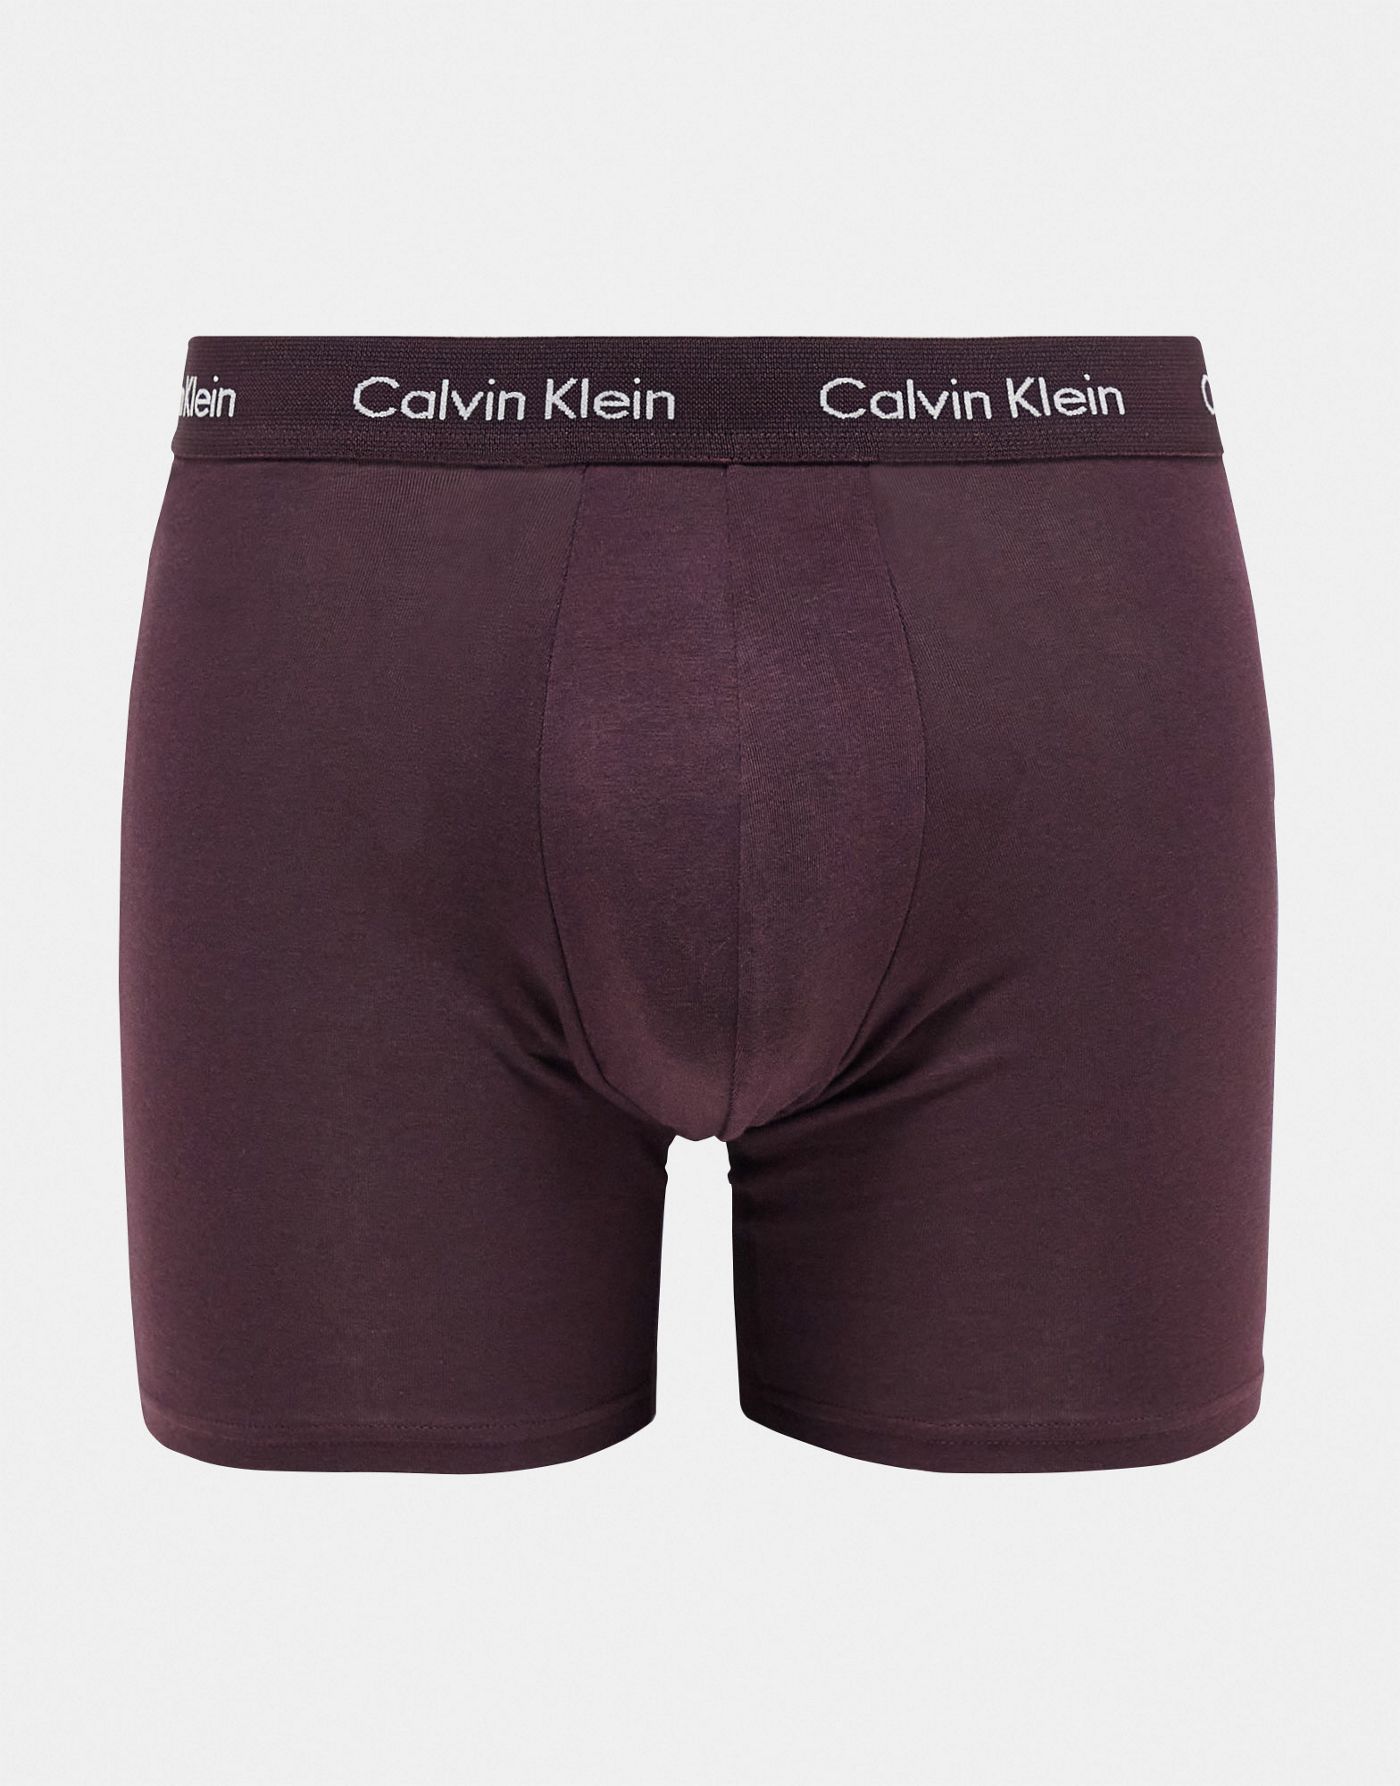 Calvin Klein Modern Cotton 3-pack stretch boxer briefs in multi